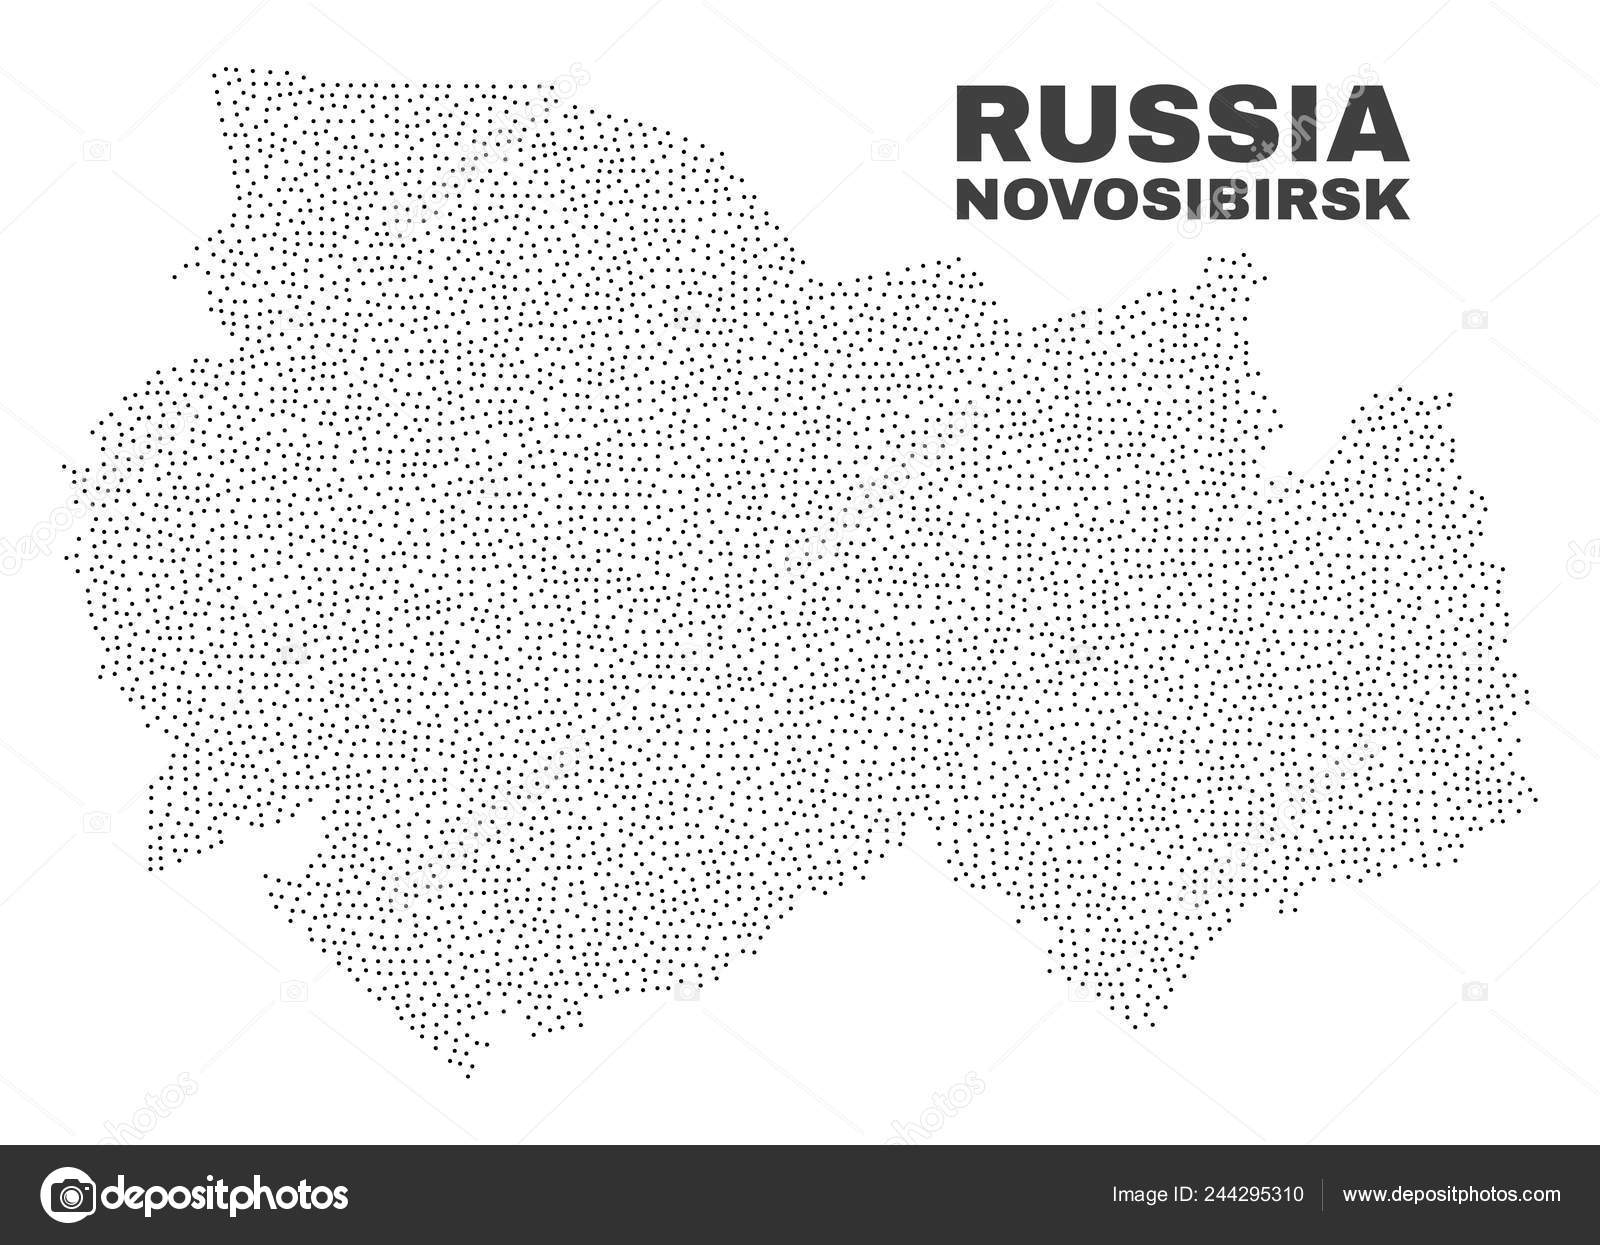 Карта Новосибирской Области Фото